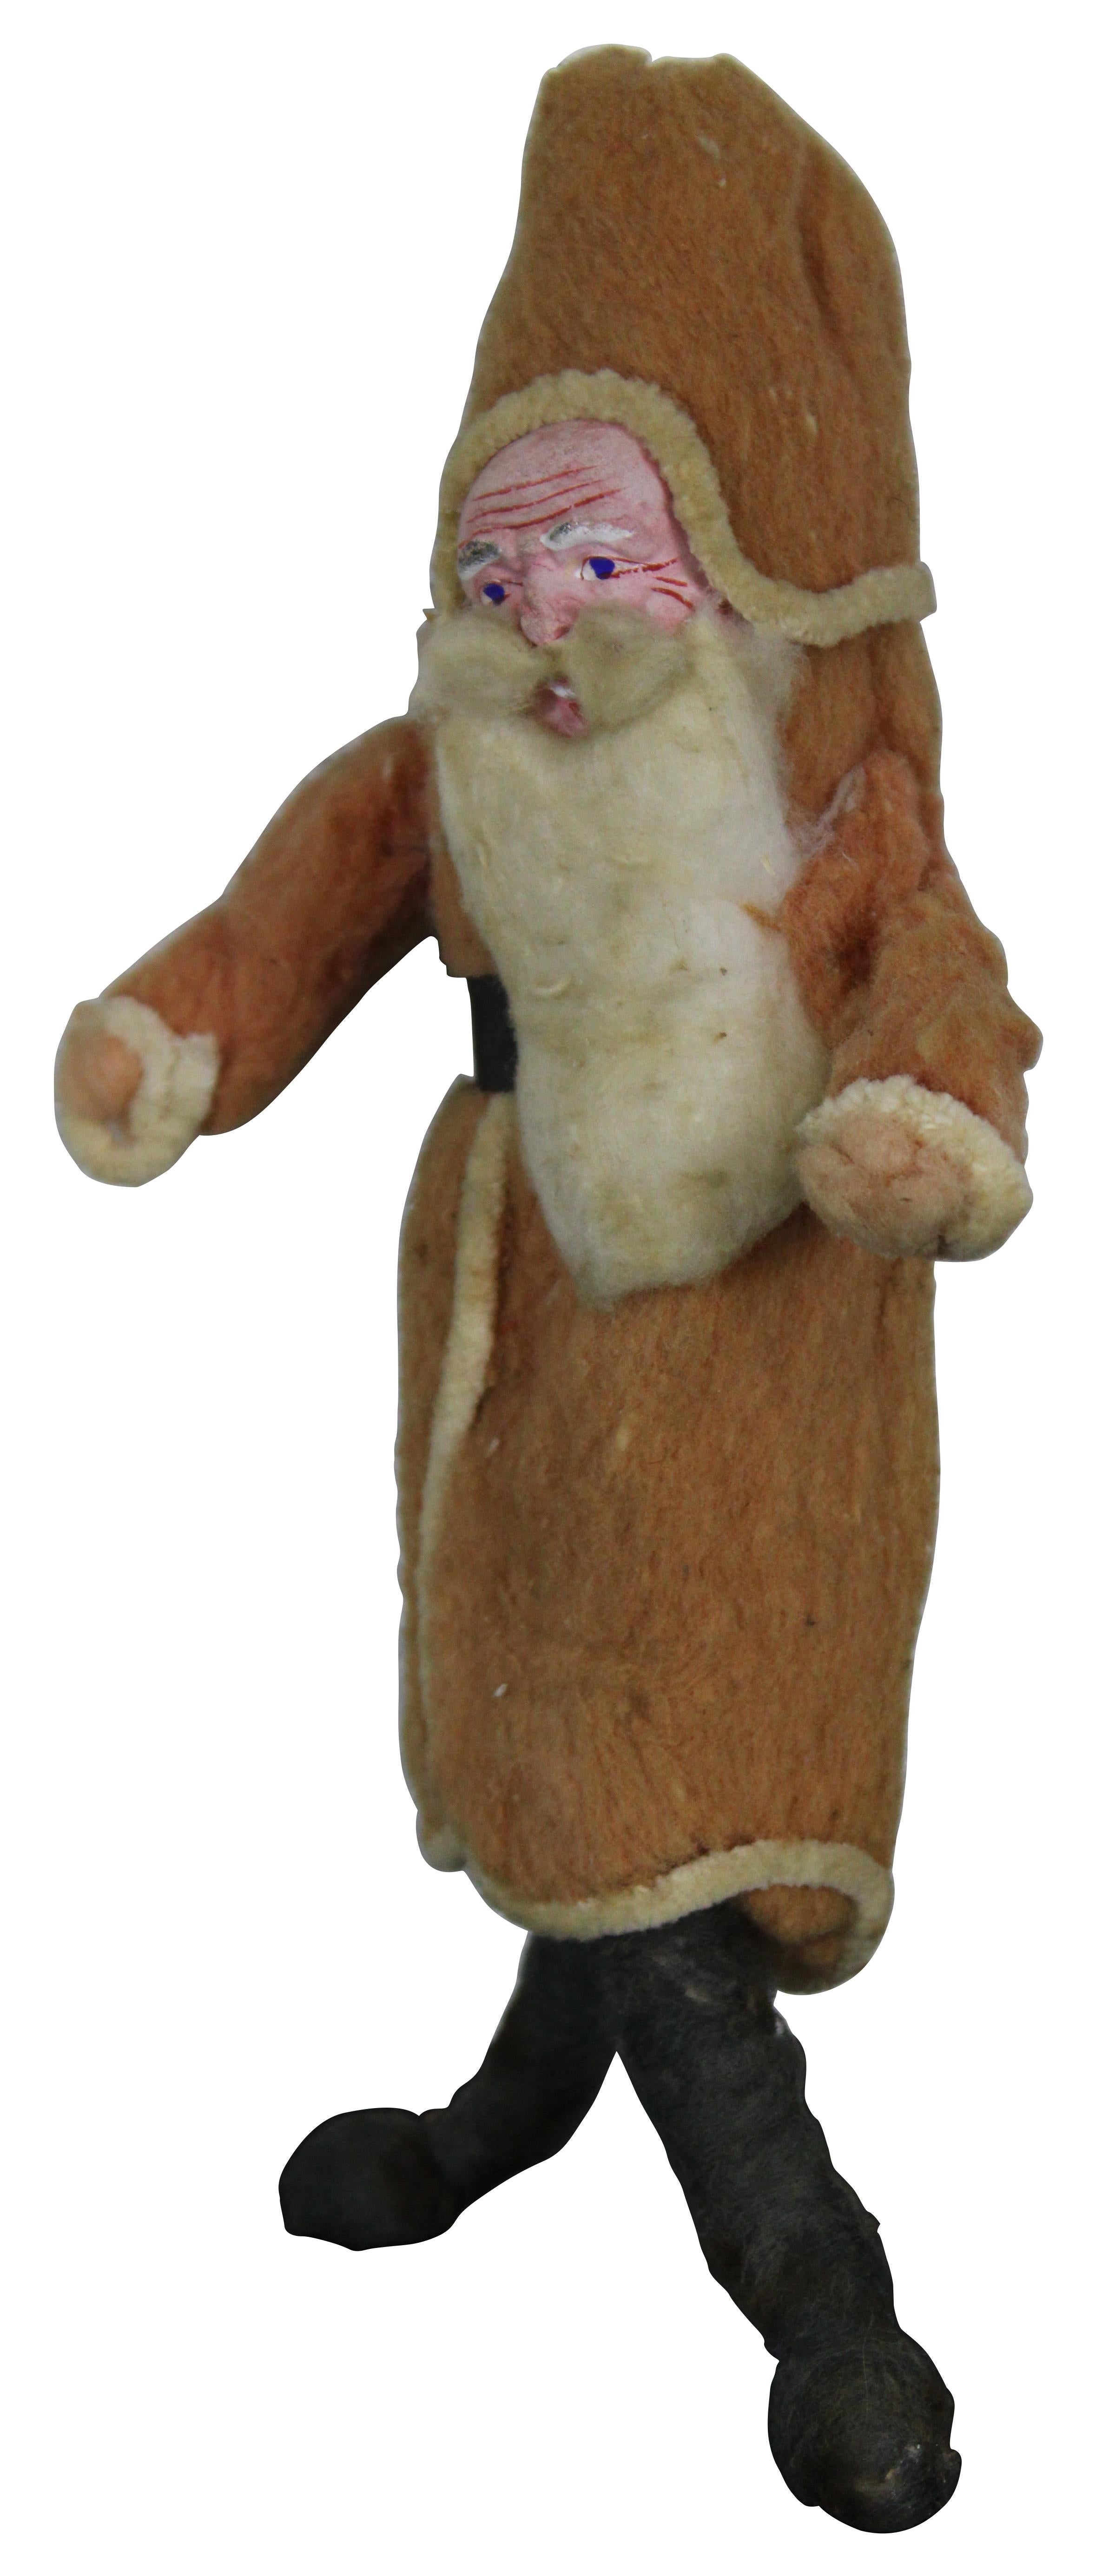 Gran muñeco alemán antiguo de adorno navideño de Papá Noel de lana de algodón hilado con cara de composición pintada a mano.
Medida: 9